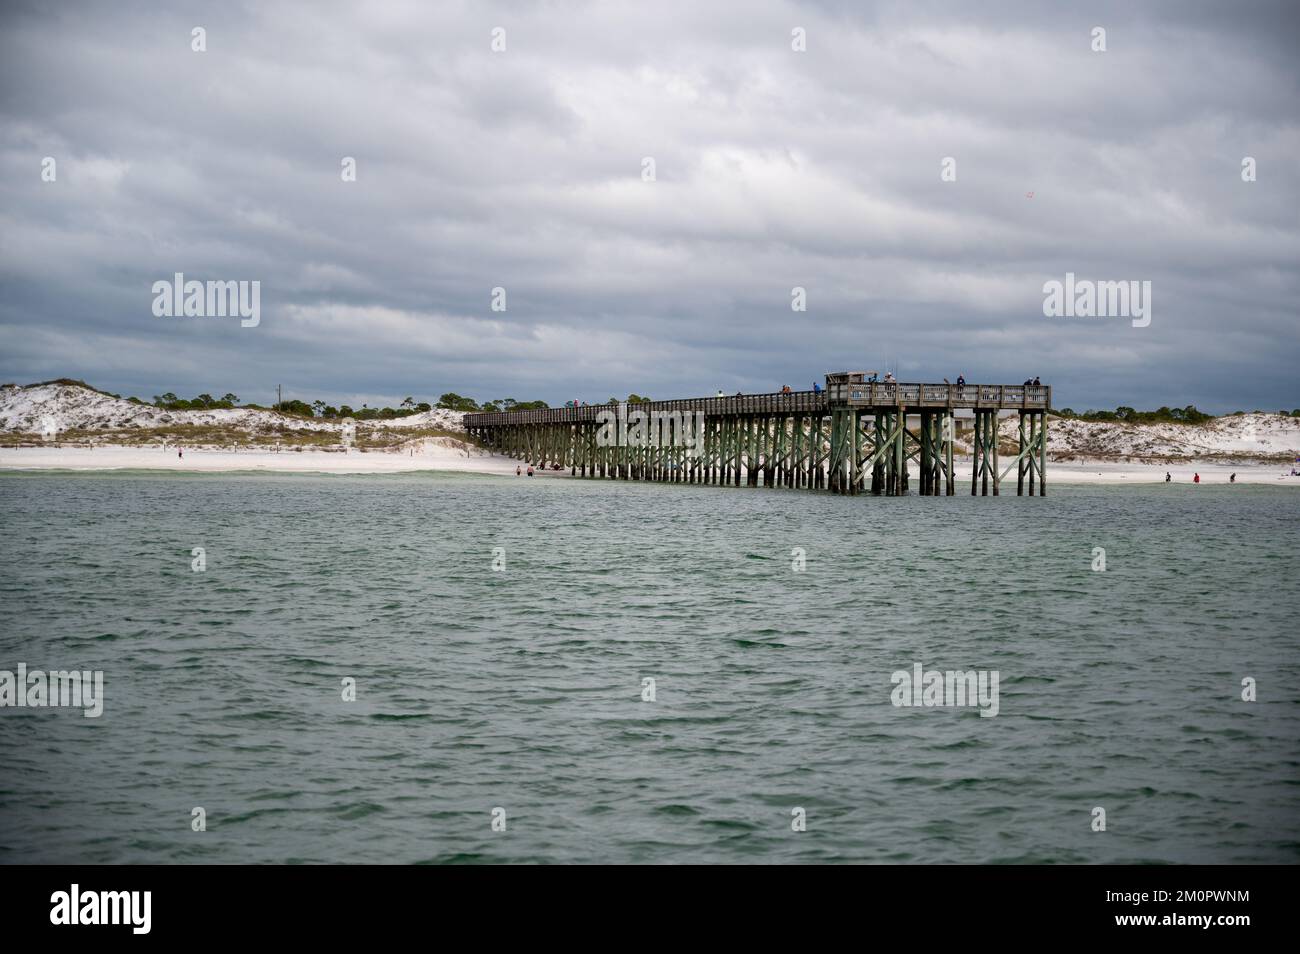 Una vista natural del viejo muelle y de la playa en un día nublado Foto de stock